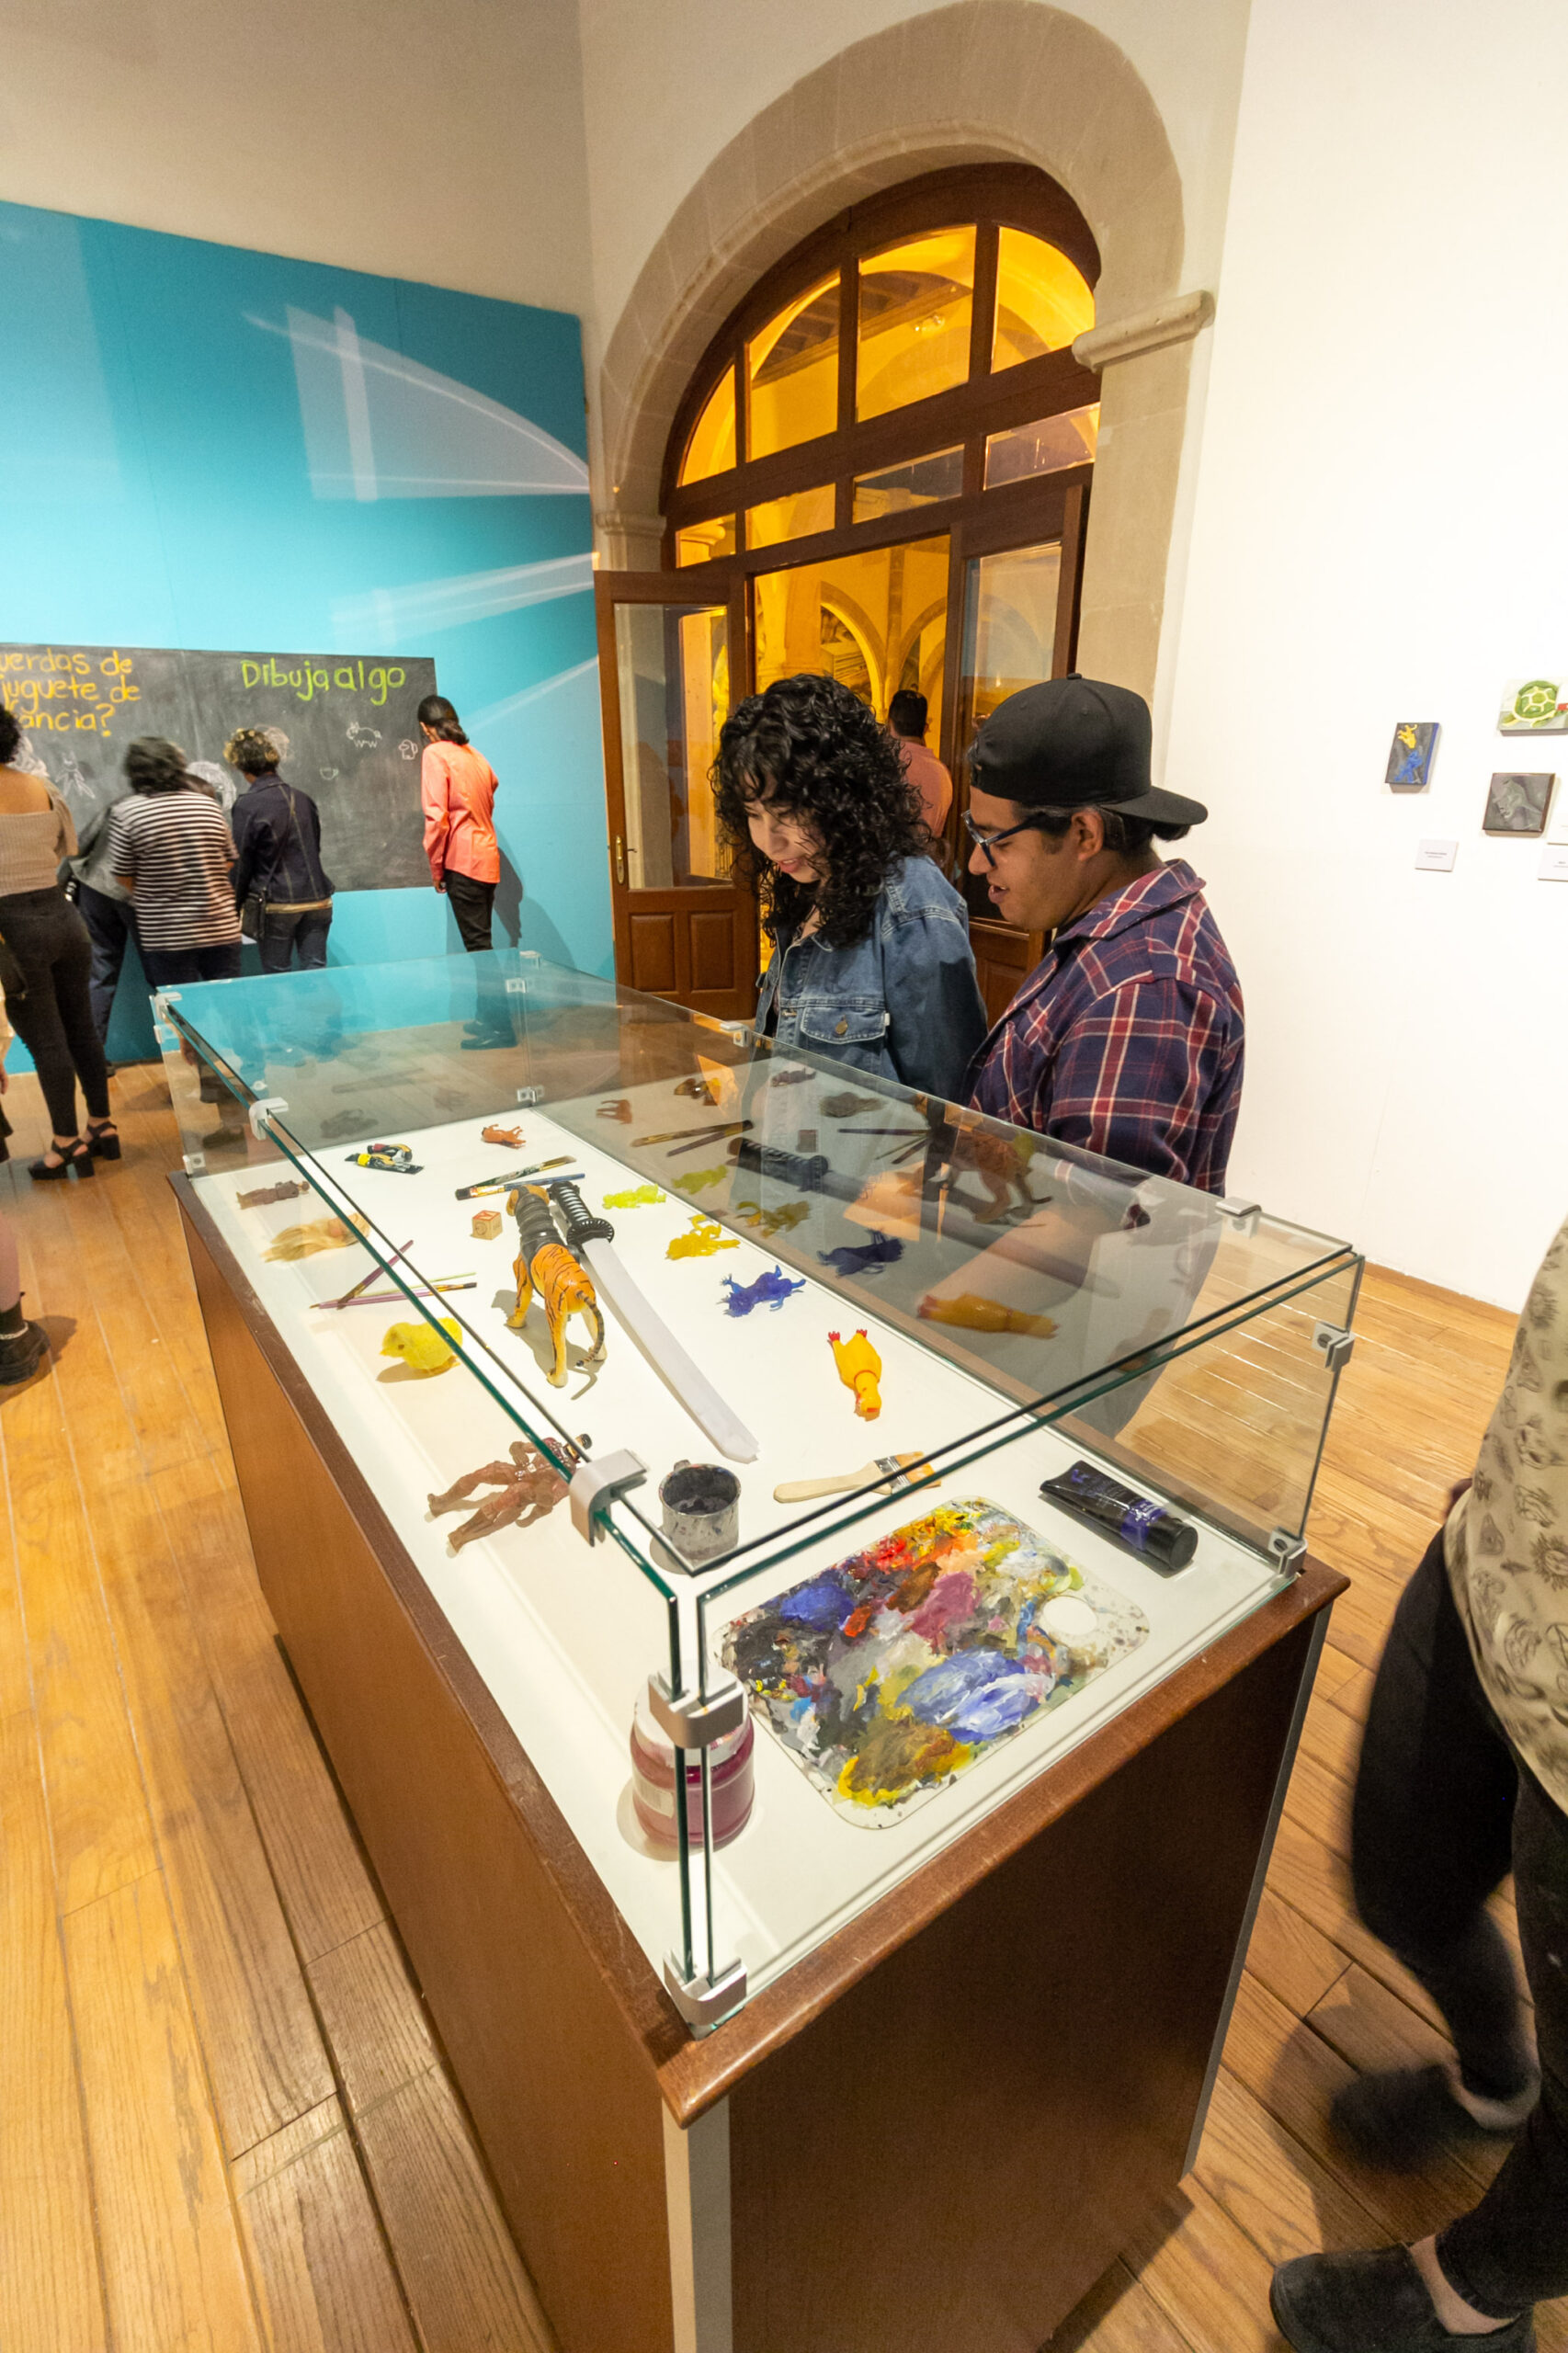 Visita la exposición “Caja de Juguetes” en el Museo Francisco Villa. 